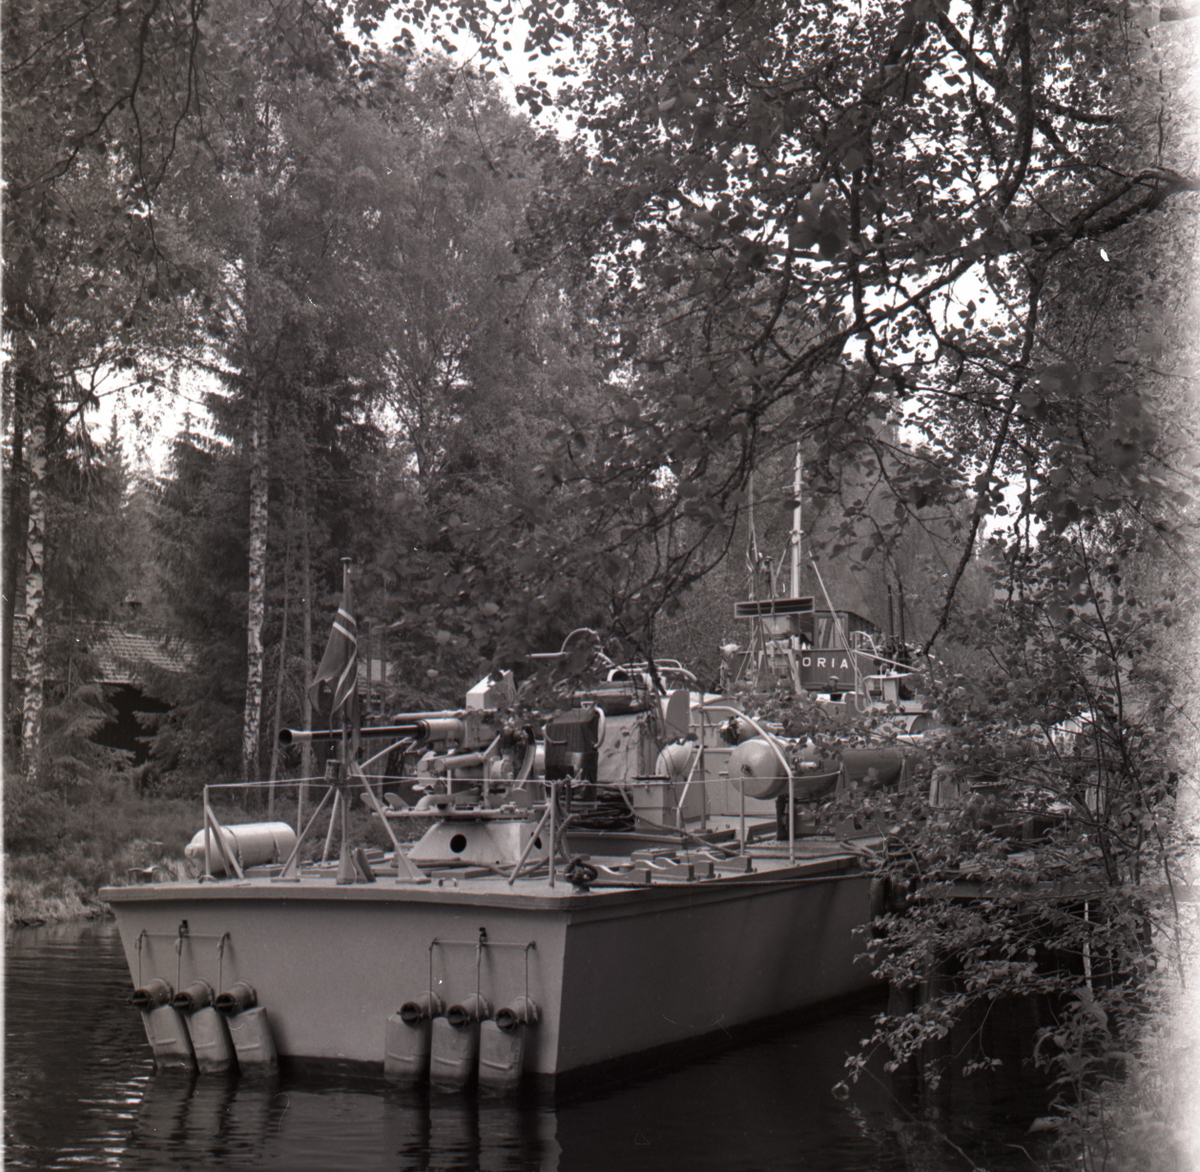 Samlefoto: Elco-klasse MTB-er gjennom Bandak-kanalen i juli 1953.
MTB og kanalbåten Victoria.